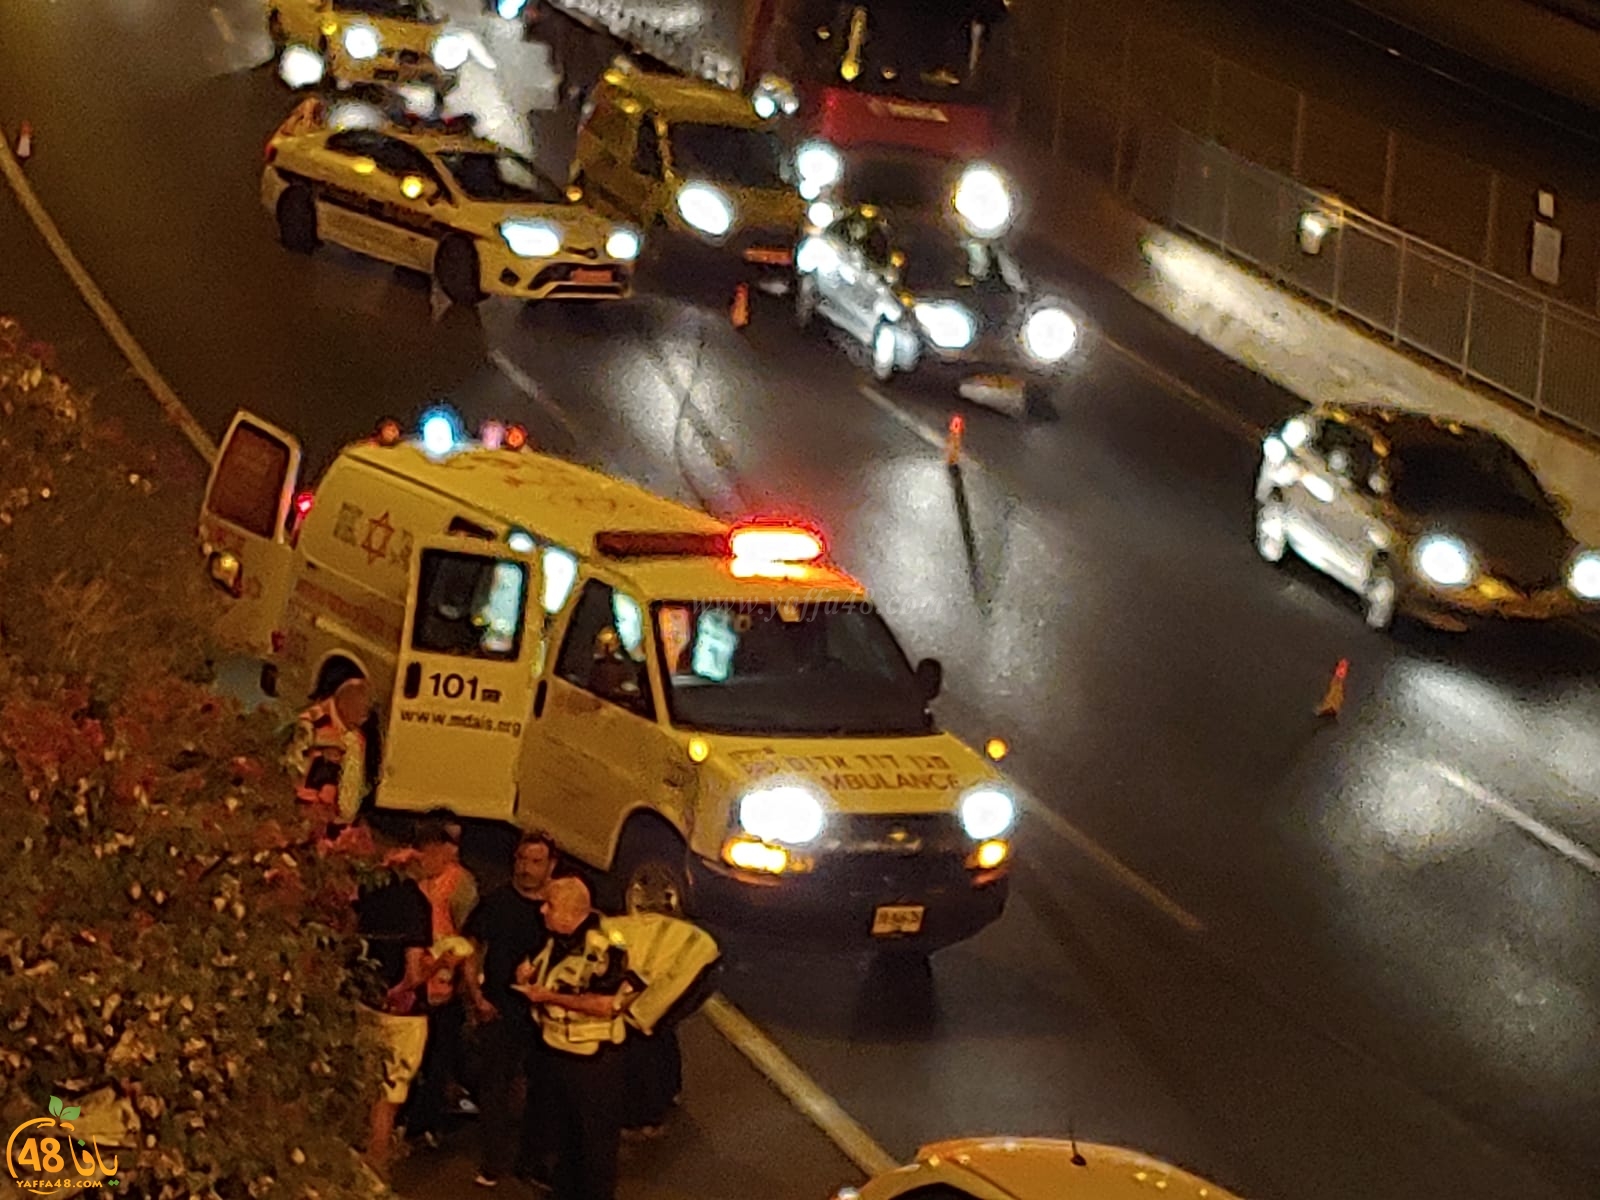  اصابة متوسطة لشخص بحادث طرق في مفرق فولفسون جنوب يافا 